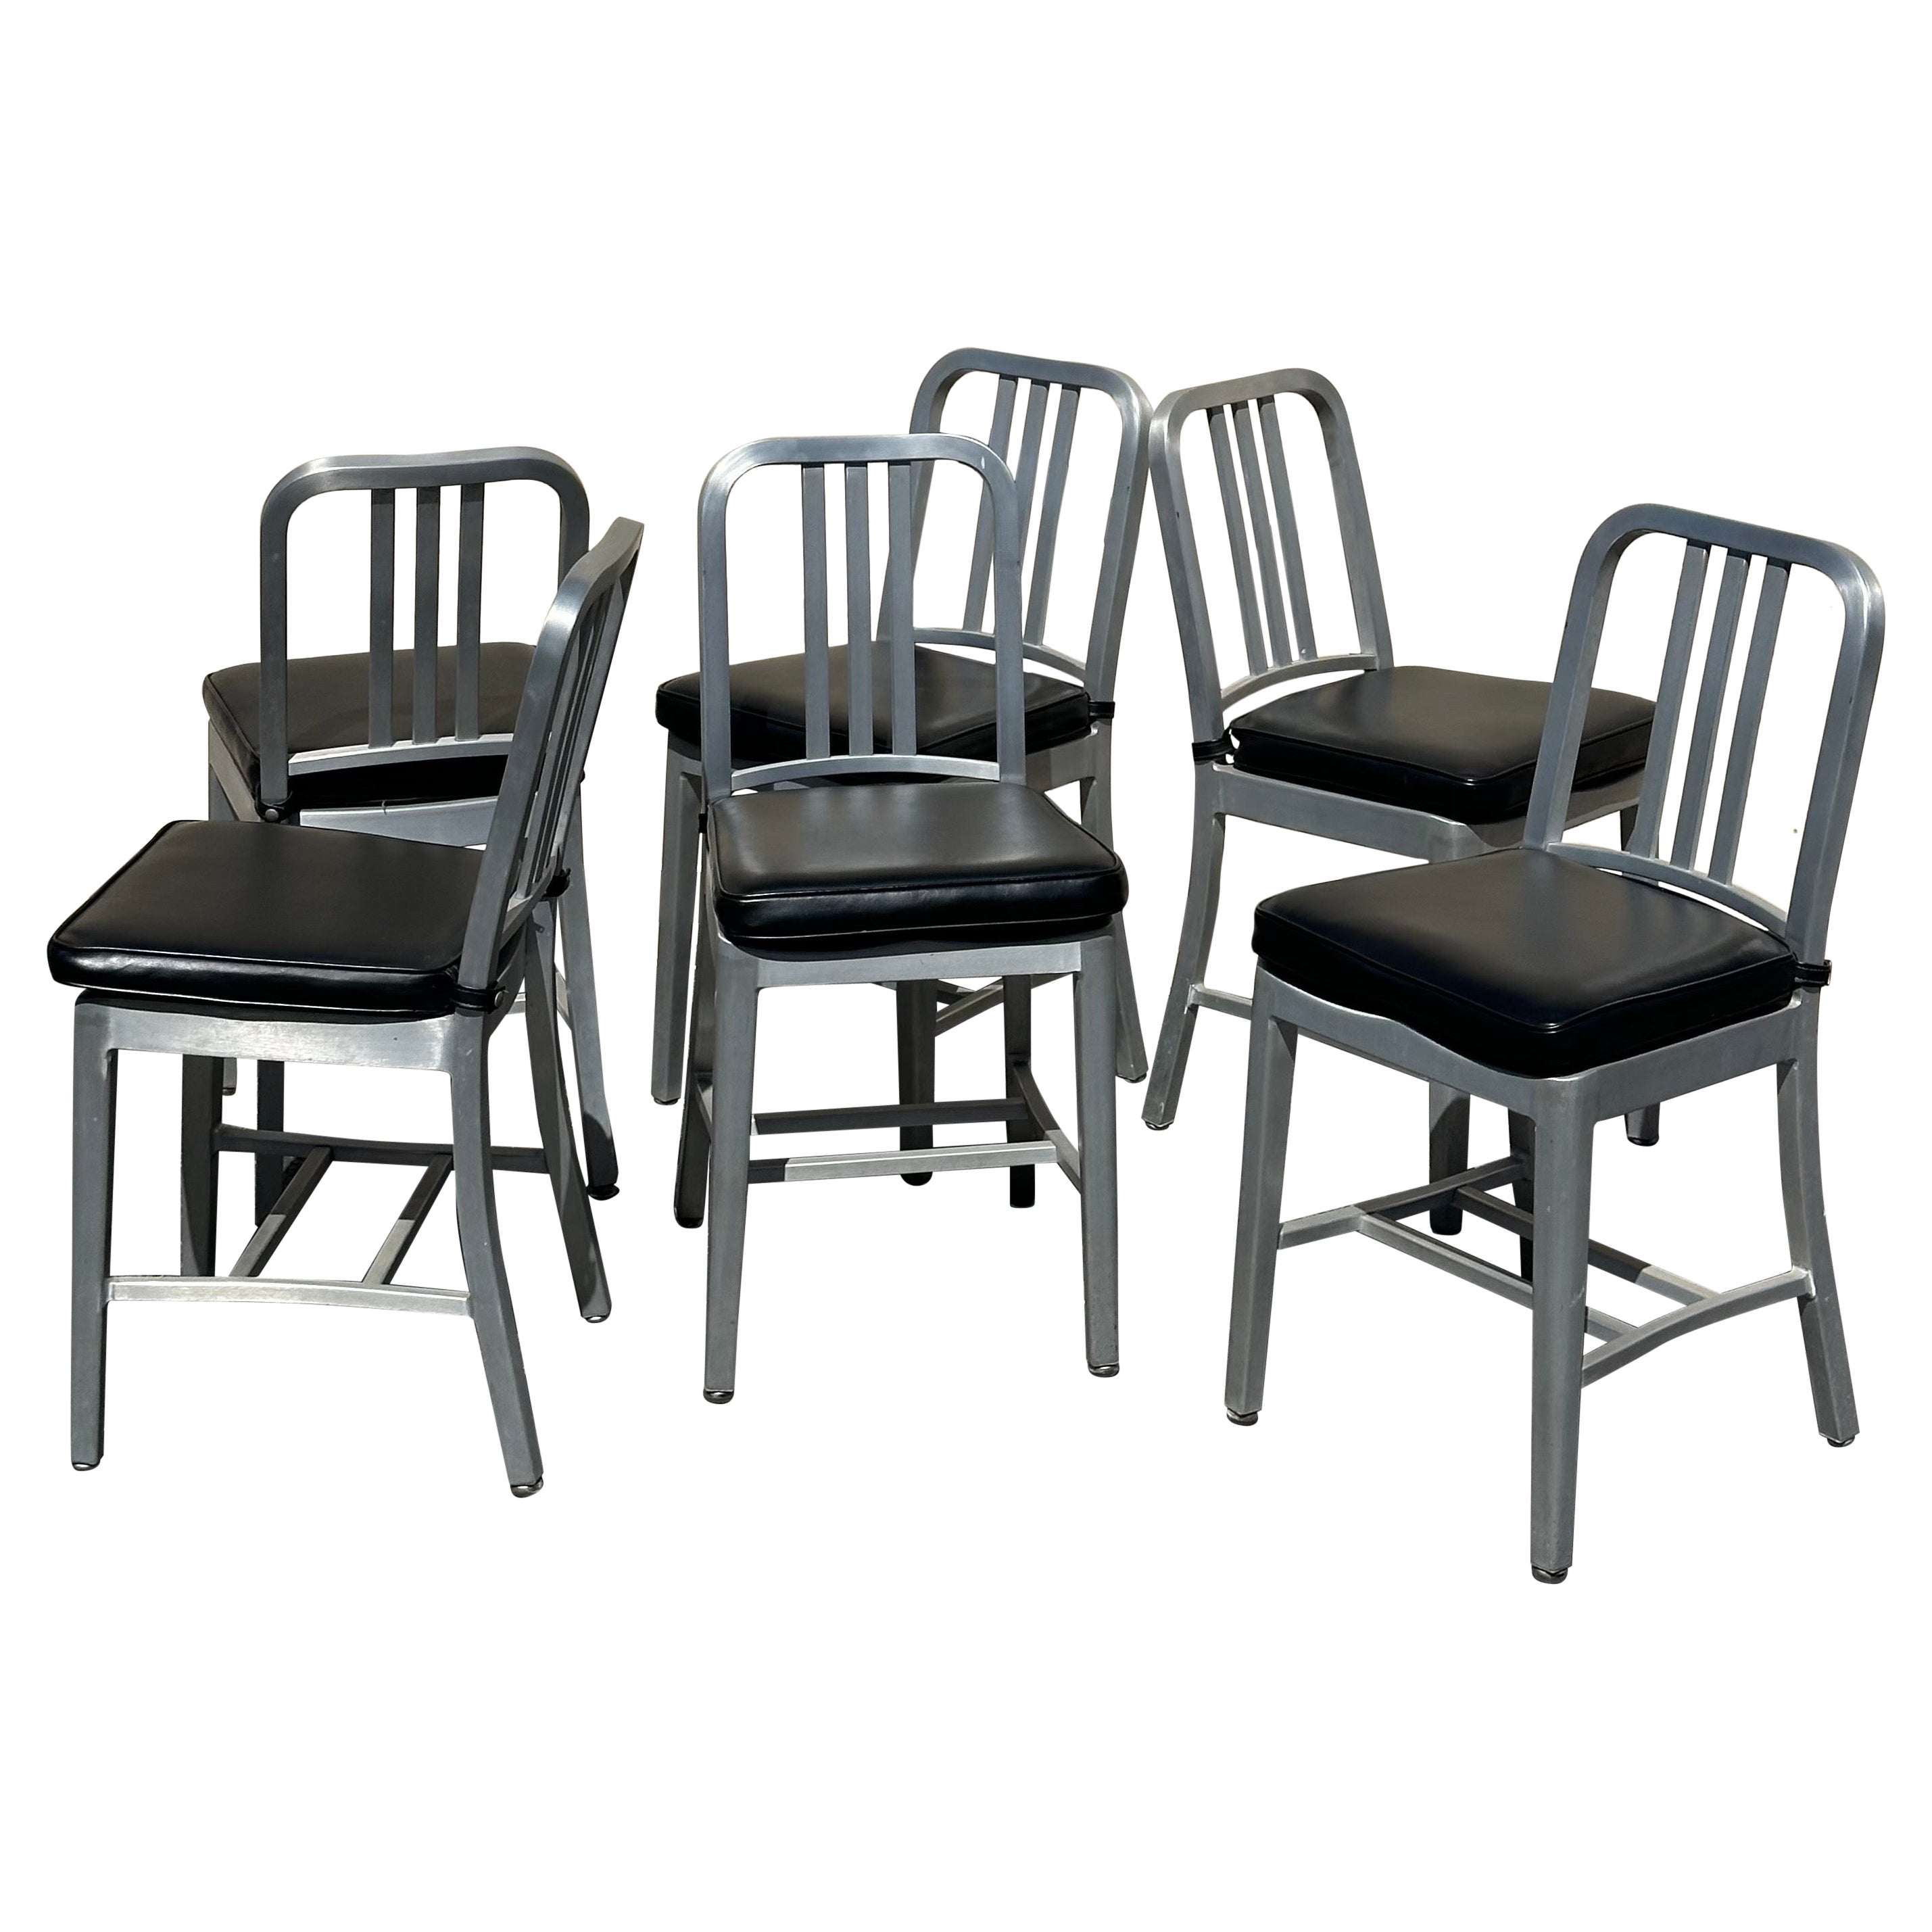 Ensemble de six chaises « Navy » n°111 en aluminium brossé  par Emeco avec coussin